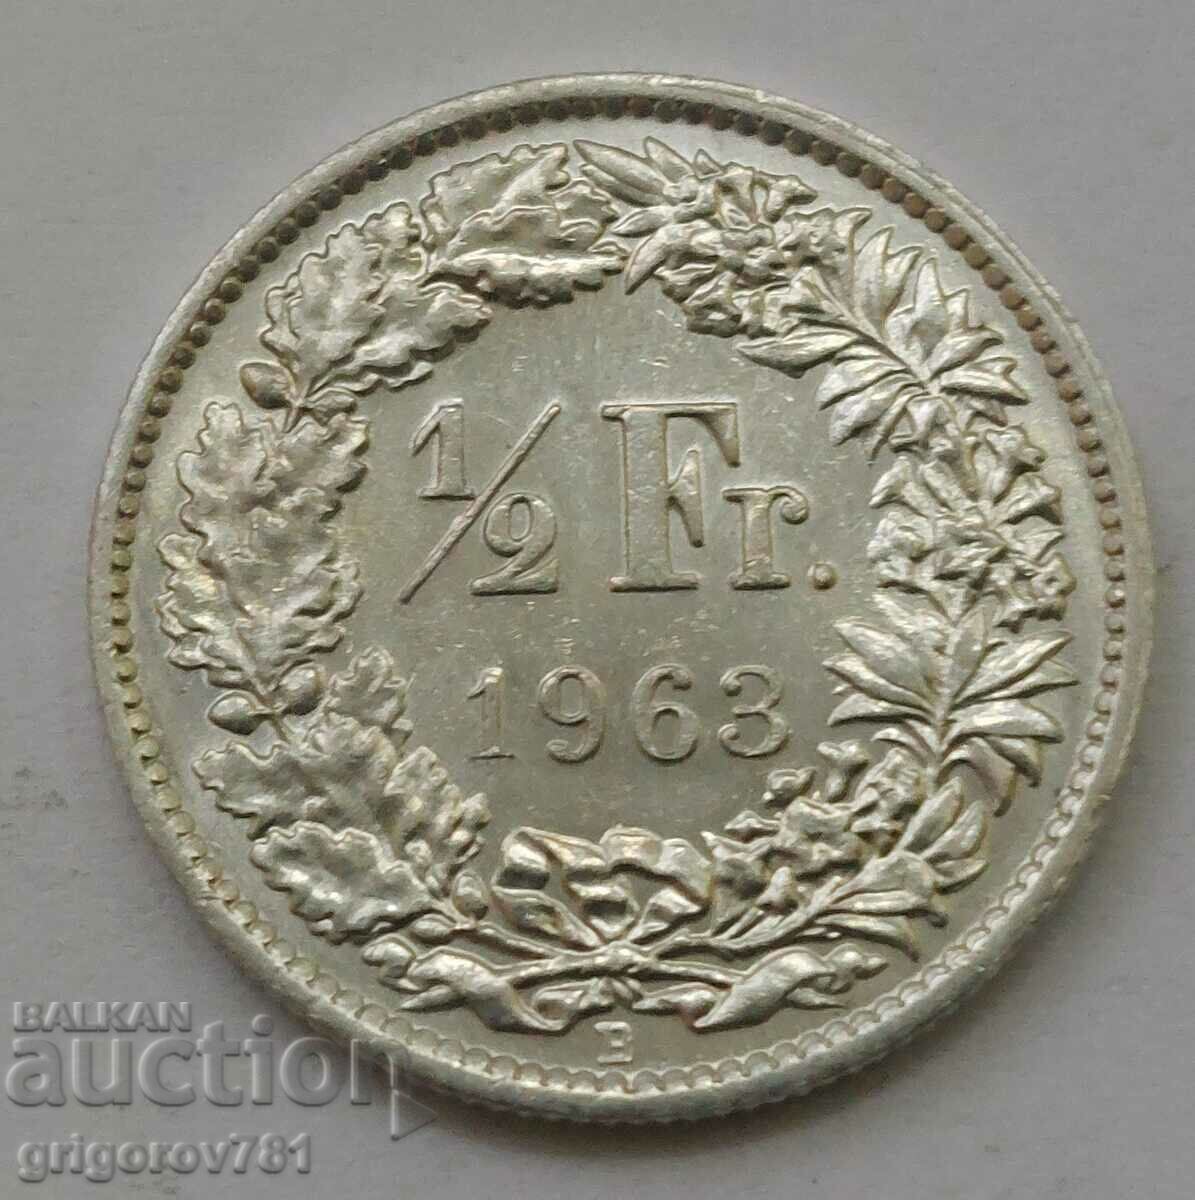 Ασημένιο φράγκο 1/2 Ελβετία 1963 Β - Ασημένιο νόμισμα #160